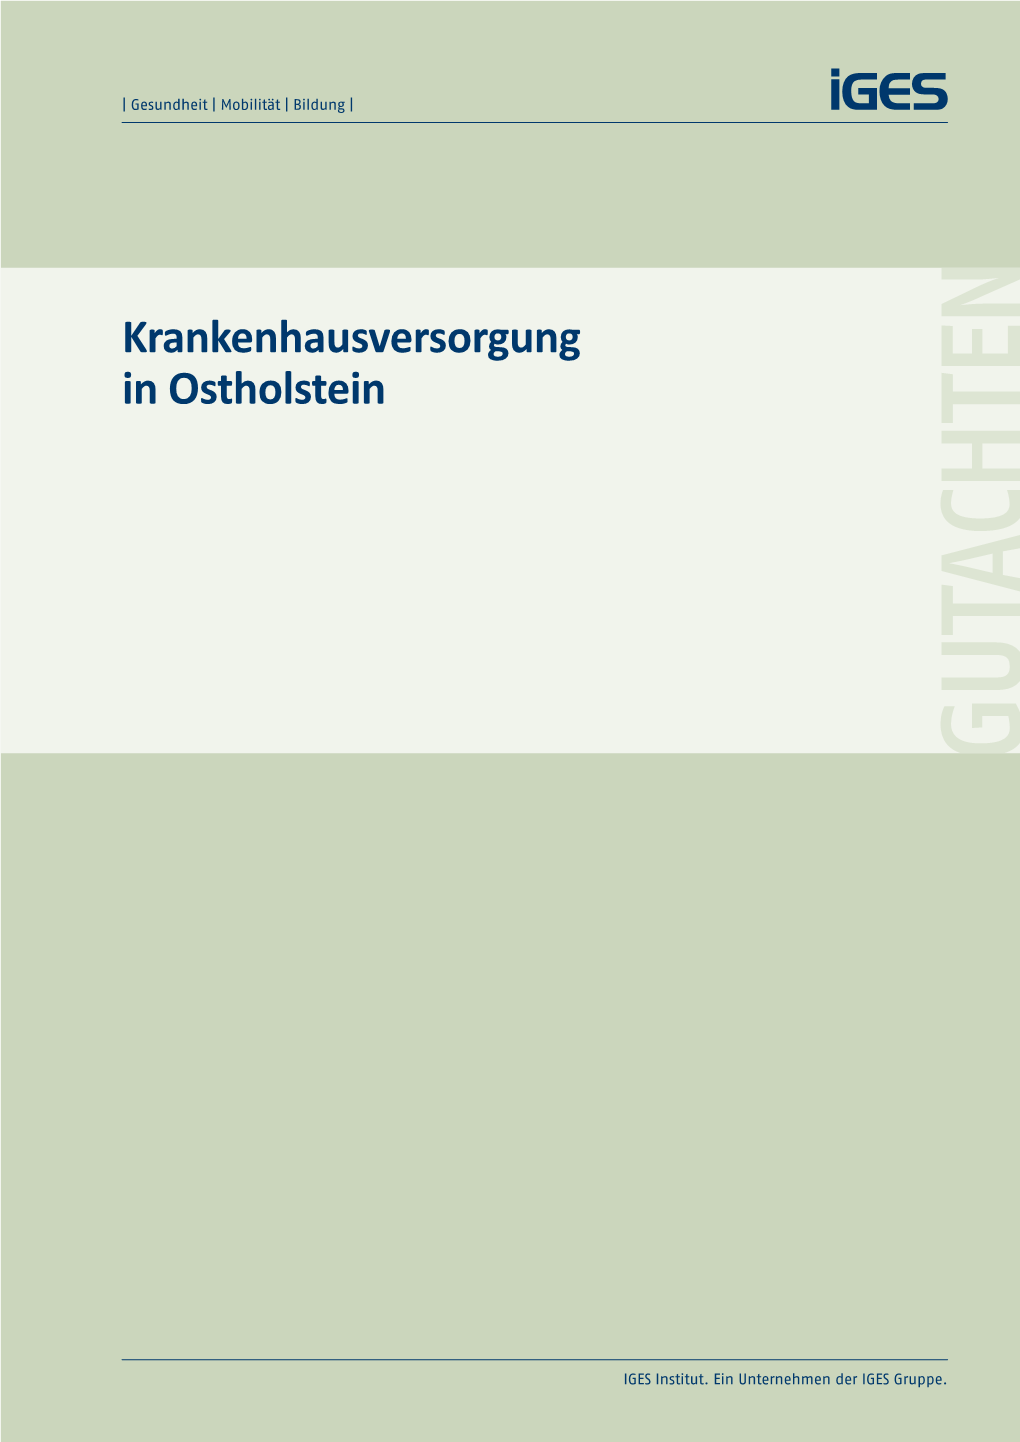 Krankenhausversorgung in Ostholstein